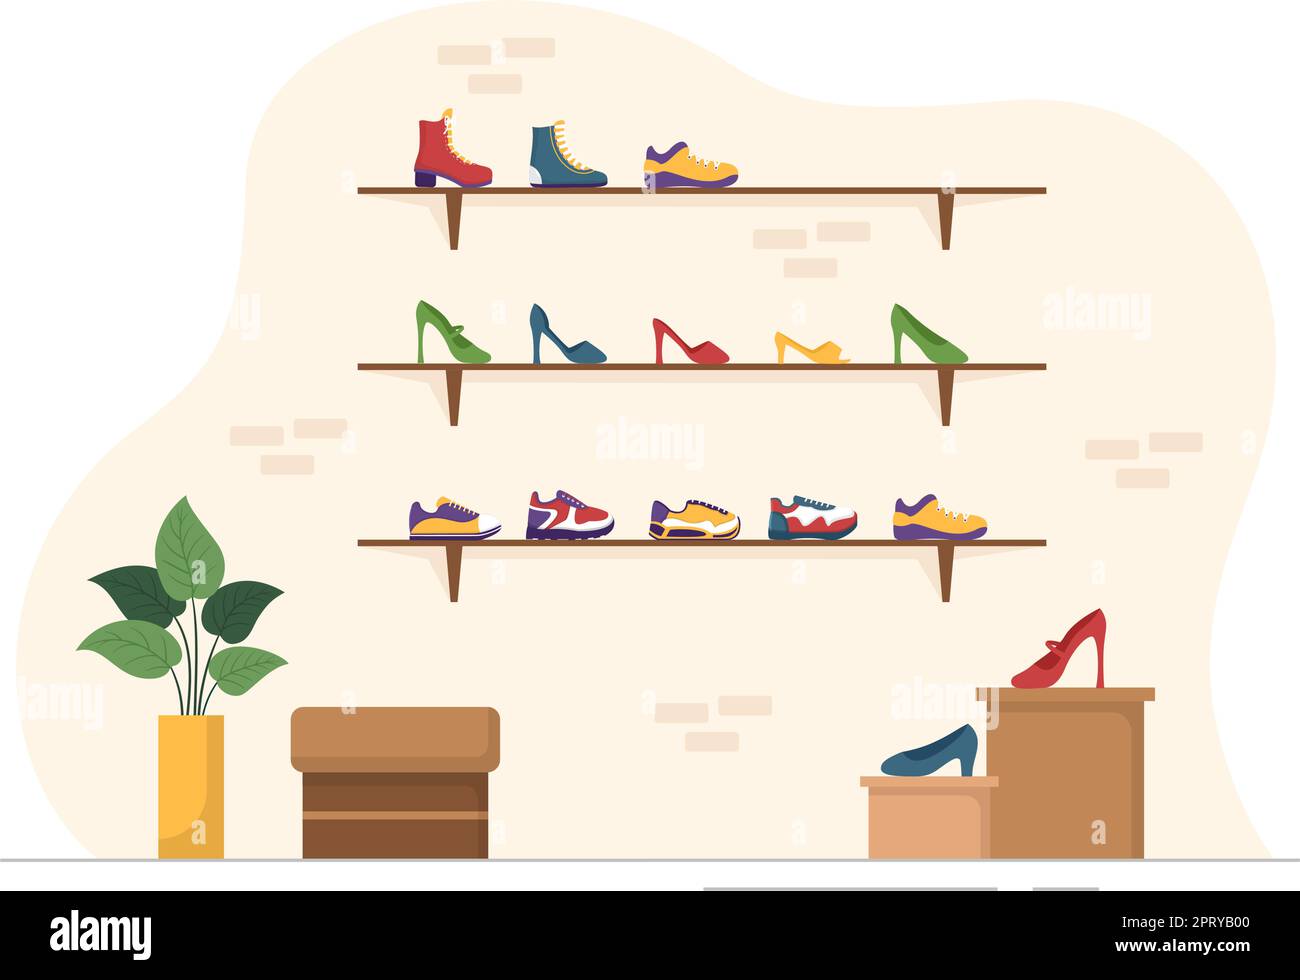 Schuhgeschäft mit neuer Kollektion Herren oder Damen verschiedene Modelle oder Farben von Sneakers und High Heels in Flat Cartoon Handgezeichnete Vorlagen Illustration Stock Vektor